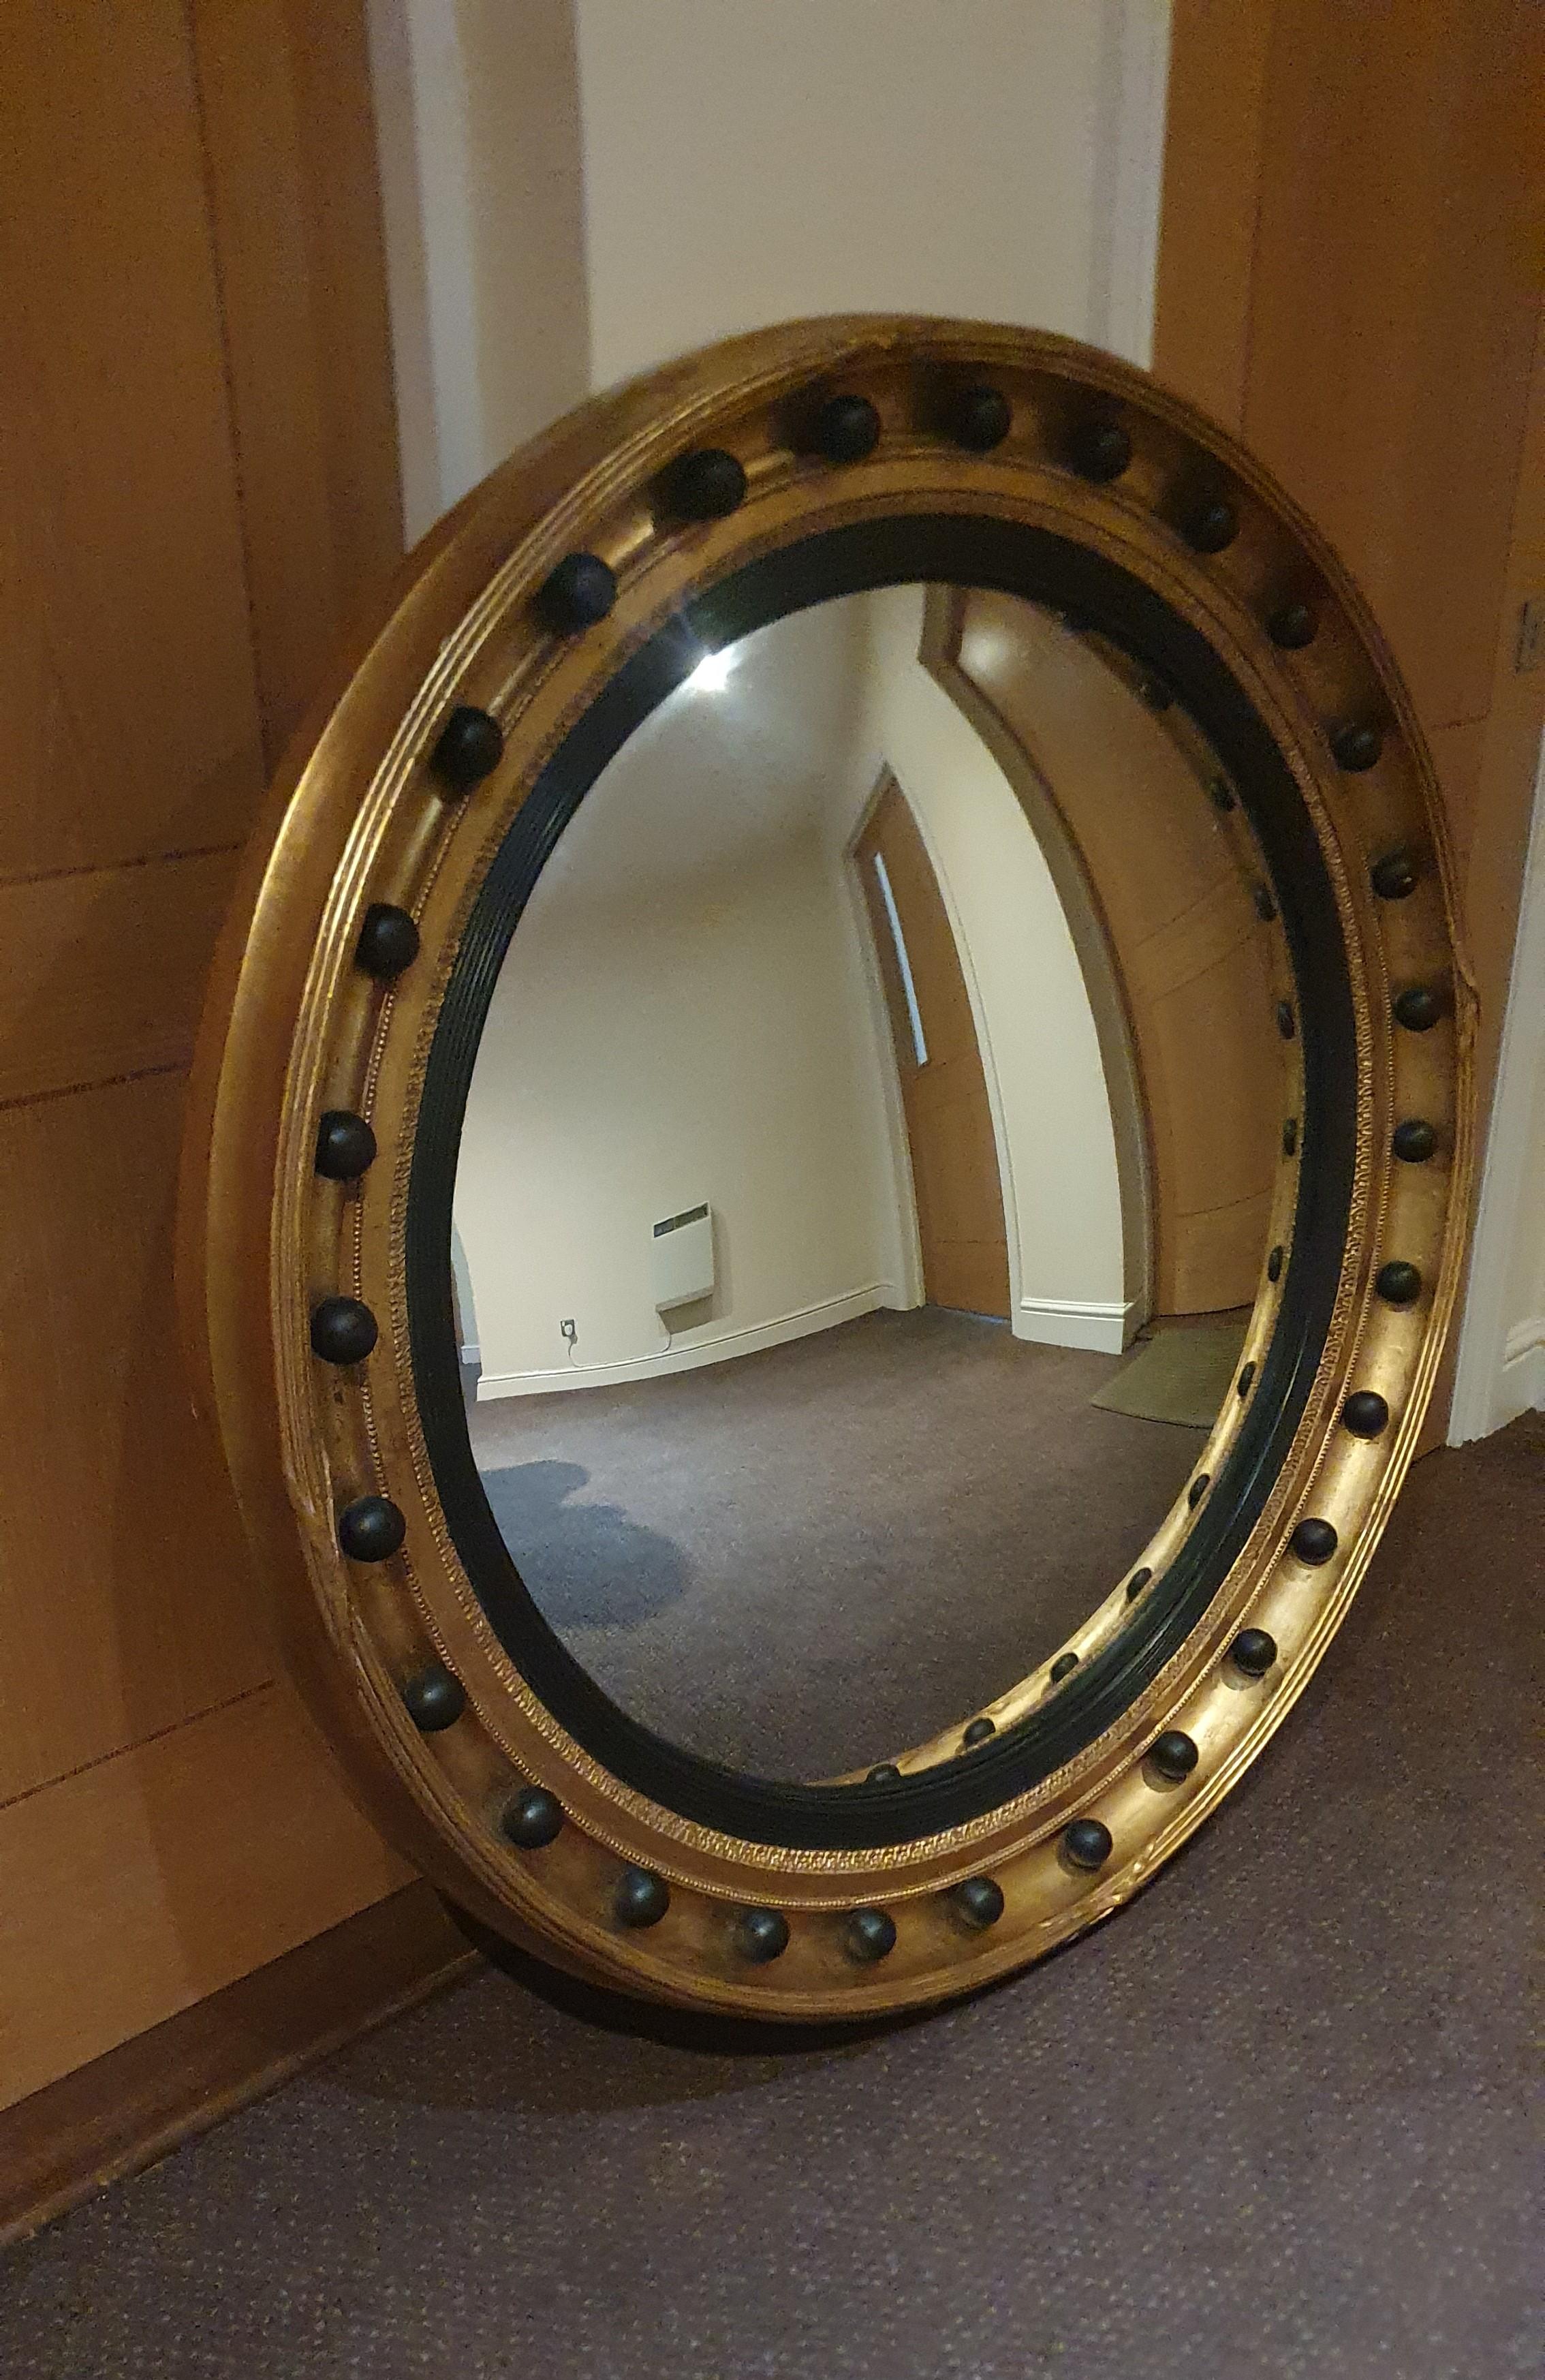 Ein sehr feiner und ungewöhnlich großer konvexer Spiegel im englischen Regency-Stil in einem sehr dicken und tiefen handgeschnitzten Giltwood-Rahmen, der mit Ölvergoldung und ebonisierten Details versehen ist

Dies ist ein sehr großer Spiegel und